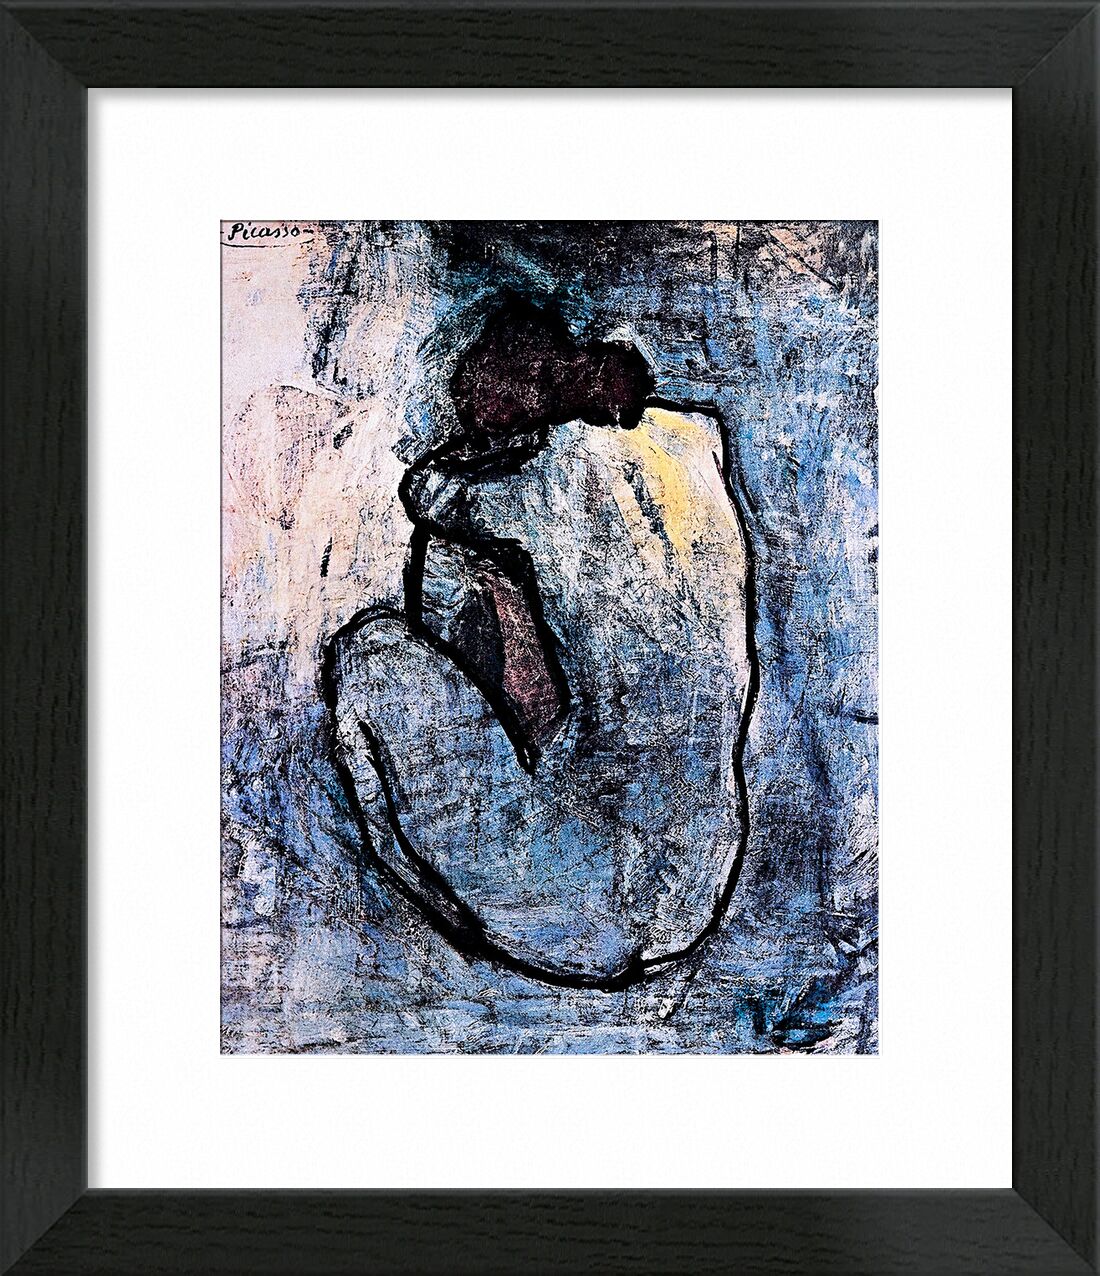 Blue nude - PABLO PICASSO von Bildende Kunst, Prodi Art, PABLO PICASSO, Porträt, Frau, Malerei, blau, nackt